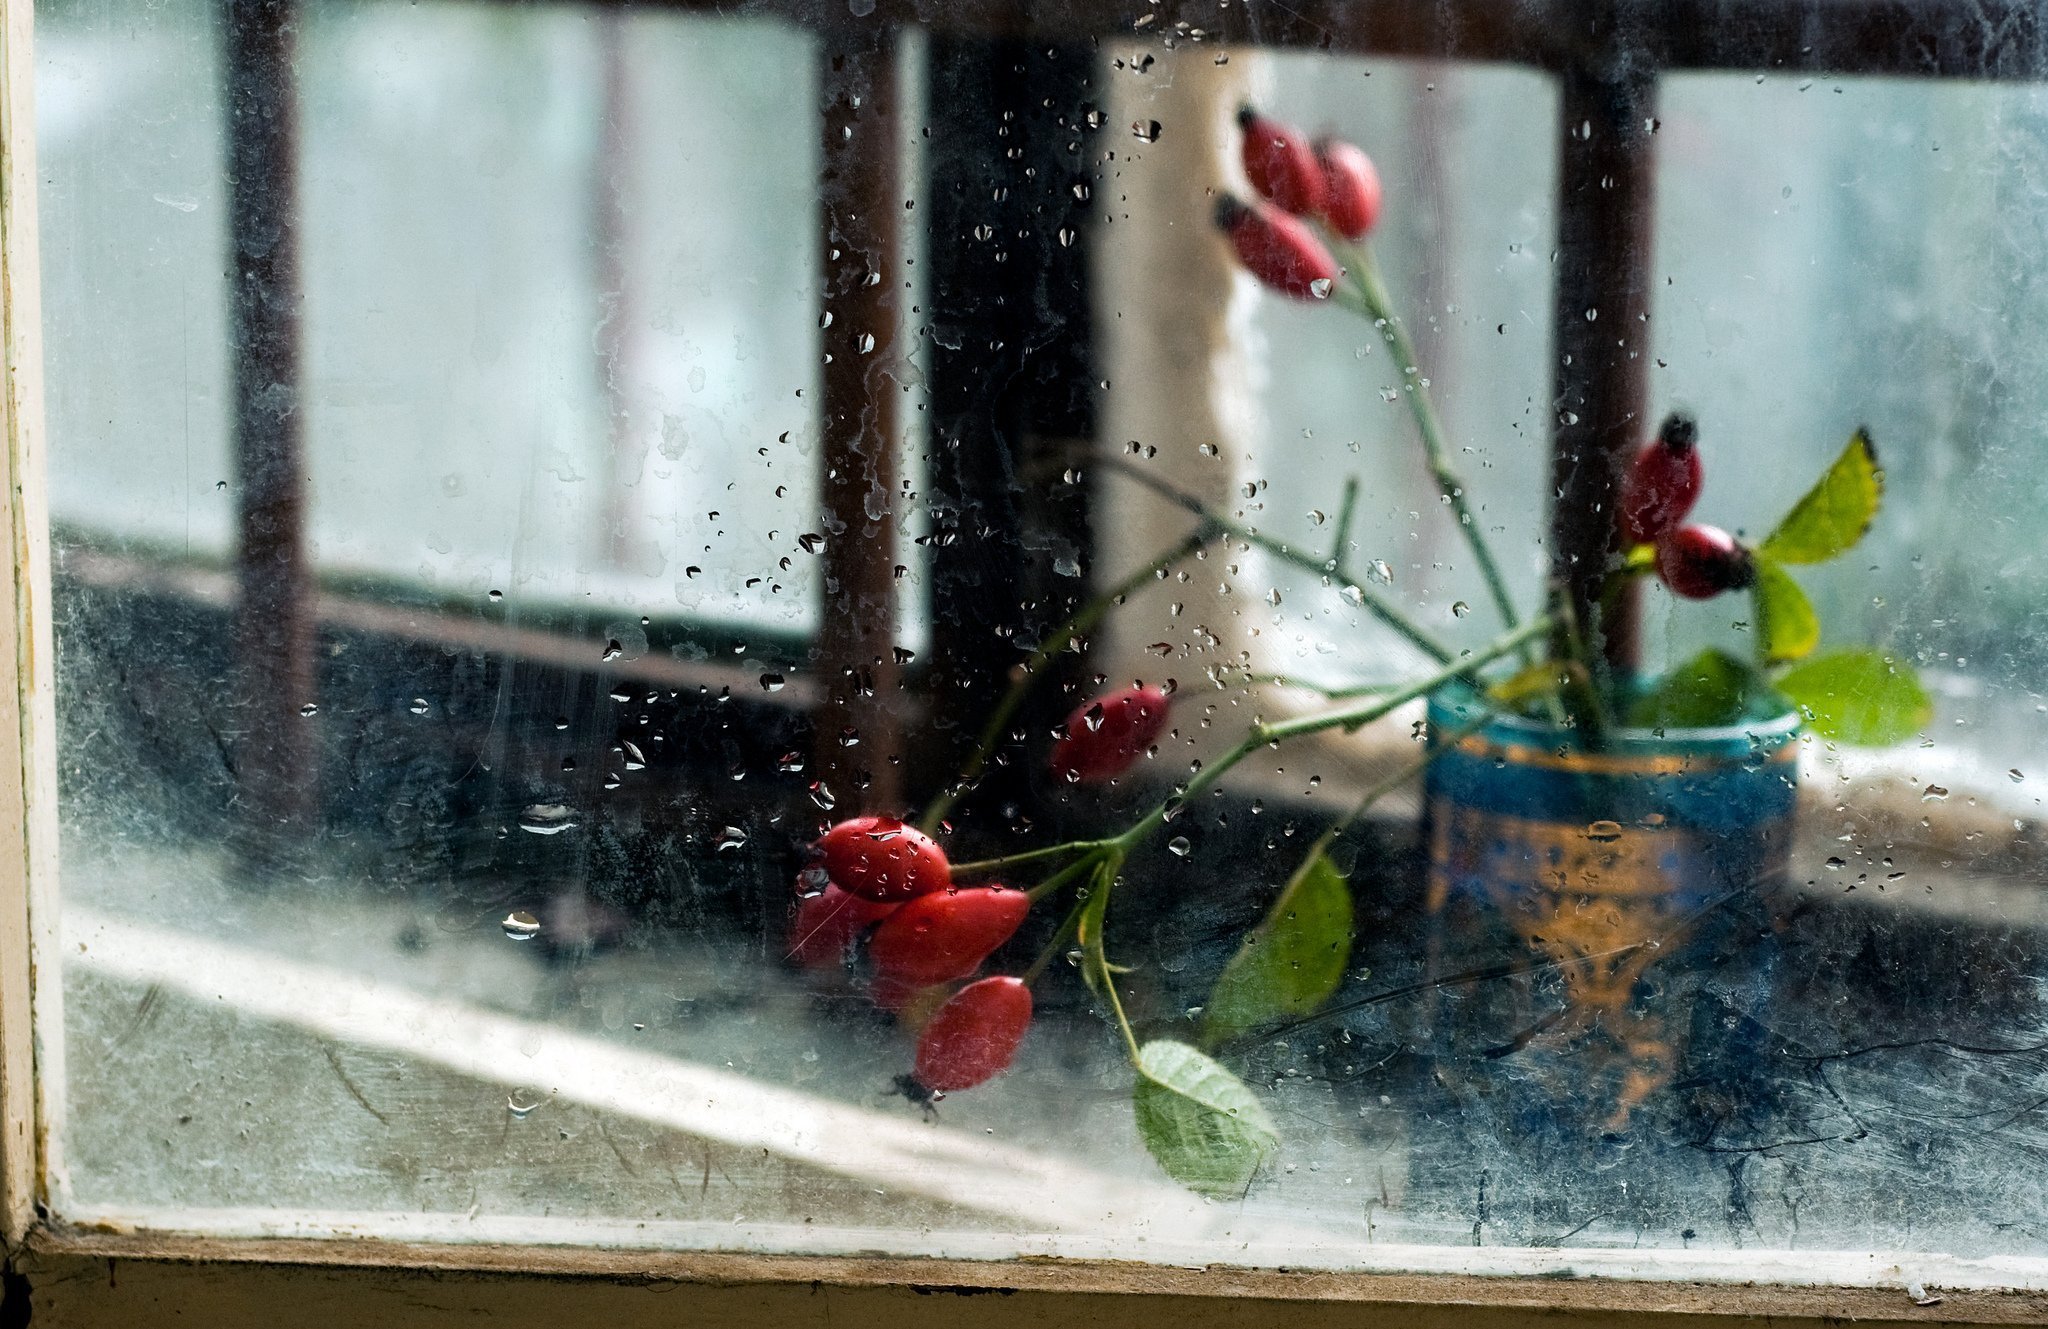 Ilgiz за окном дождь. Дождь за окном. Цветы на подоконнике. Дождь в окне. Весенние цветы на окне.